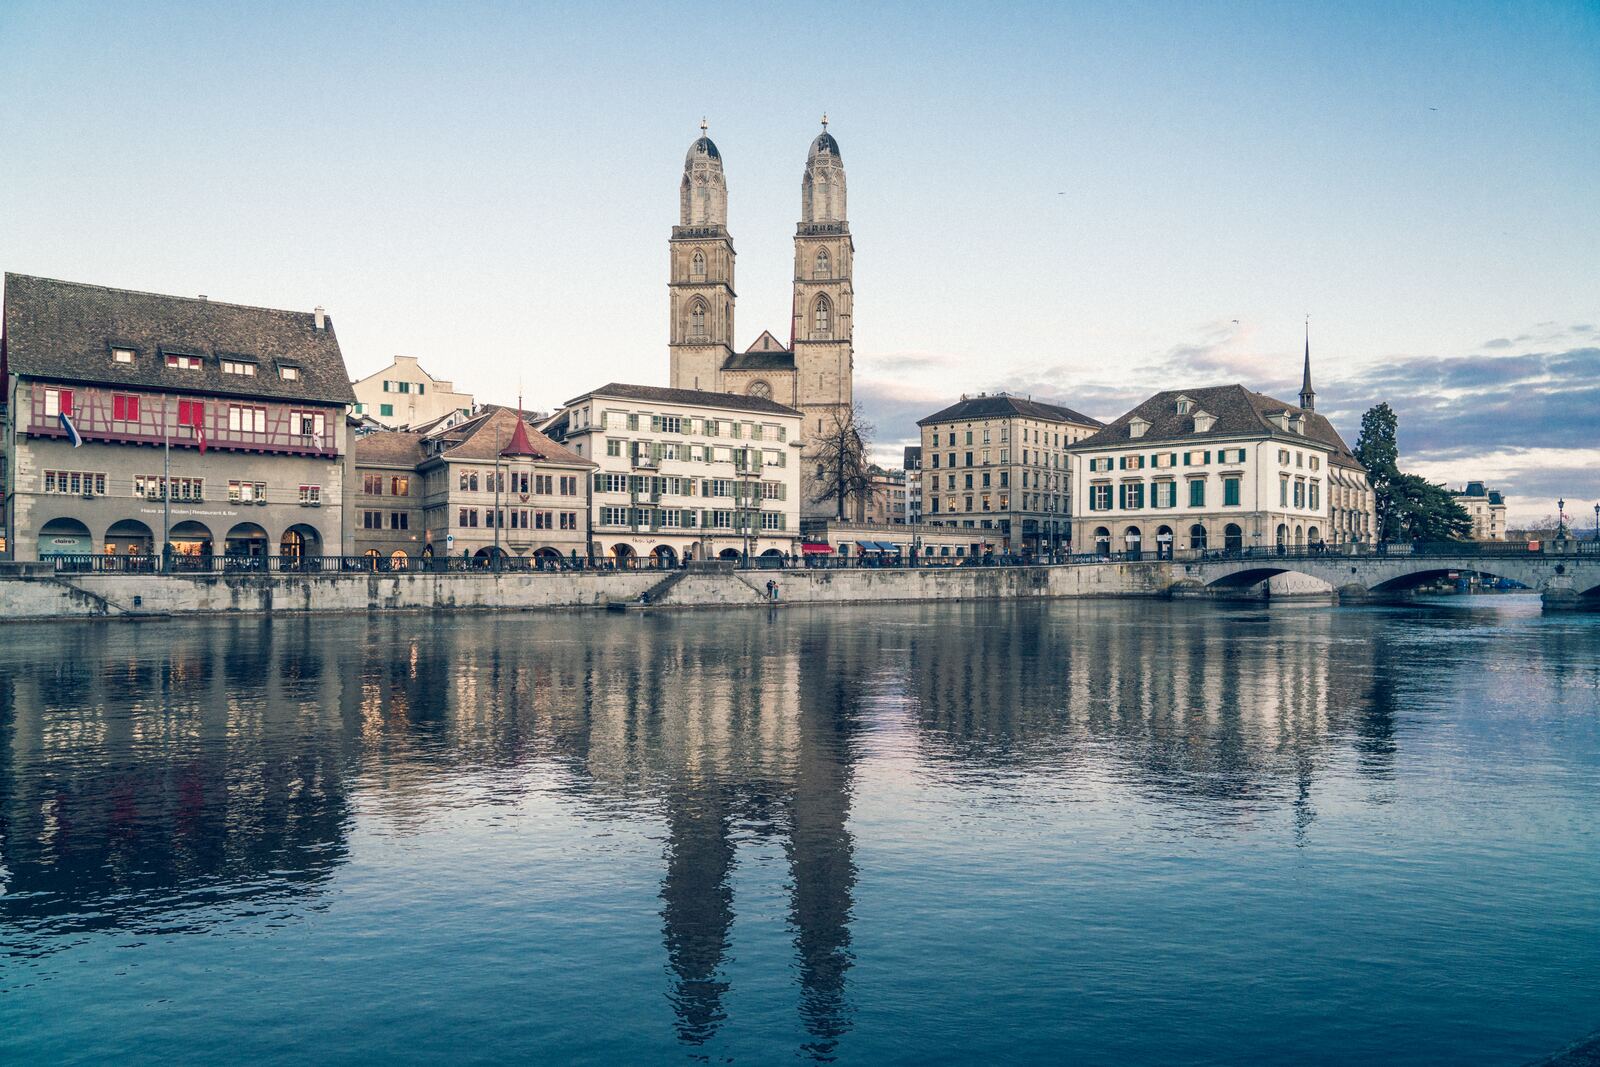 Image of Rathausbrucke & Storchen Hotel Zurich by Team PhotoHound